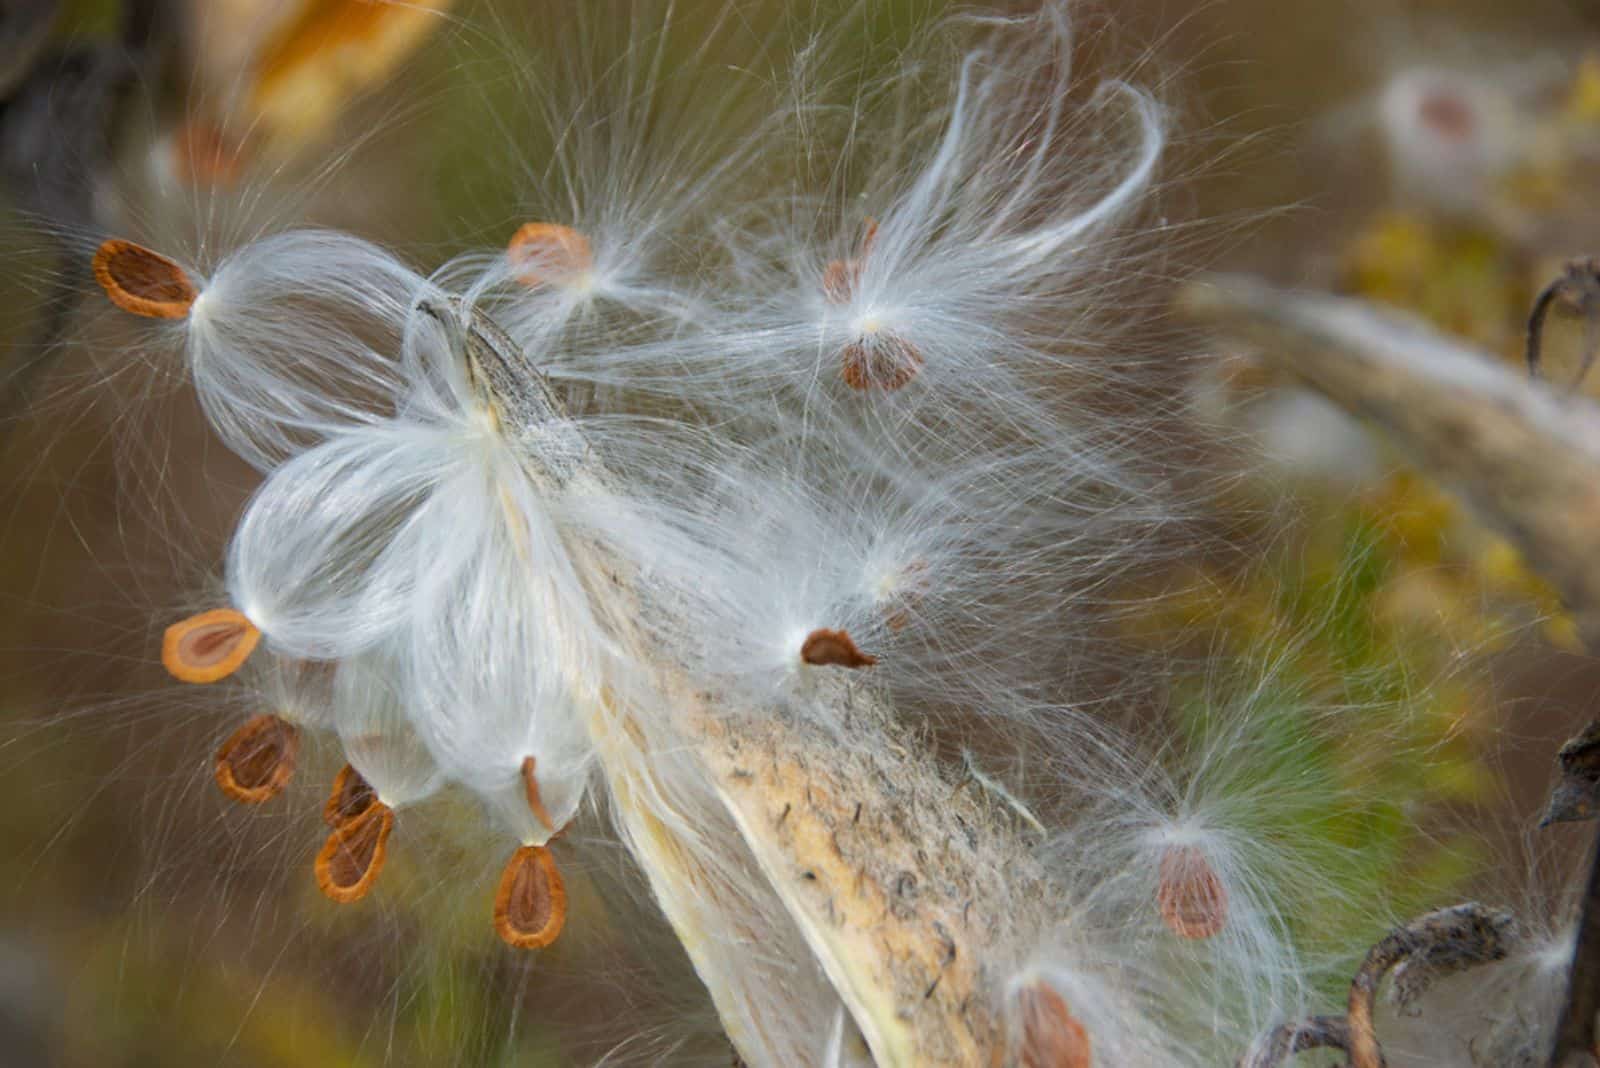 Milkweed seed pod bursting with seeds